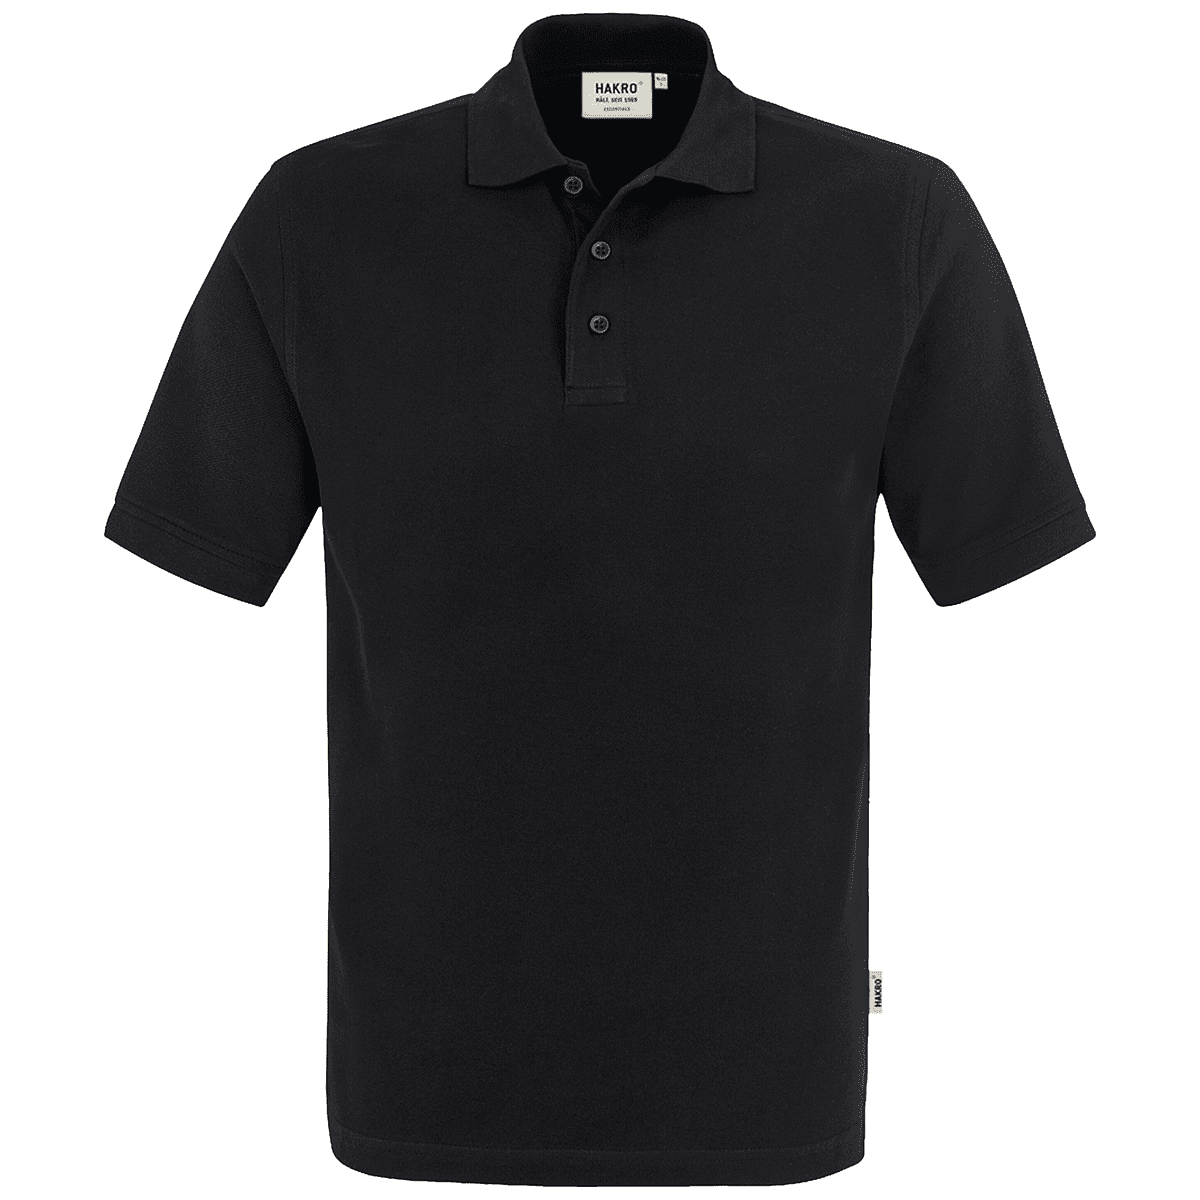 Herren Polo-Shirt Classic schwarz